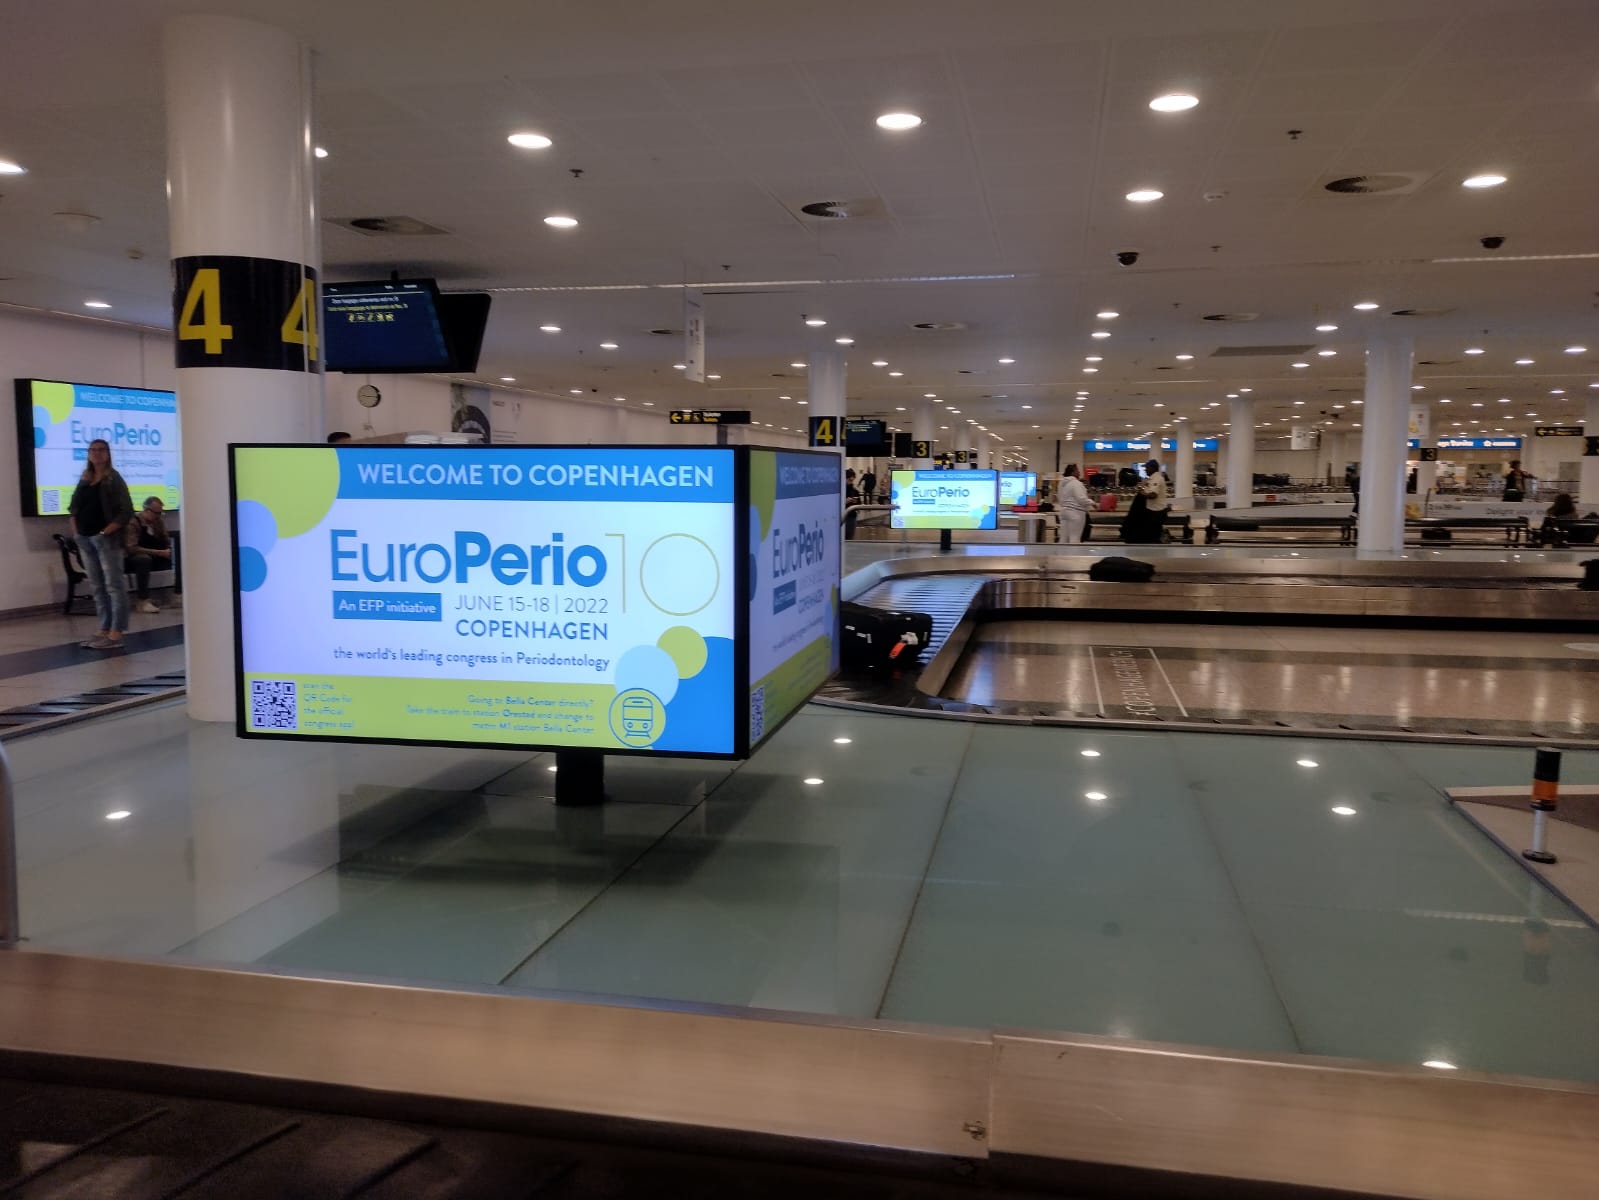 Hala lotniska w miejscu odbioru bagażu, na banerze multimedialnym znajduje się logo EuroPerio10